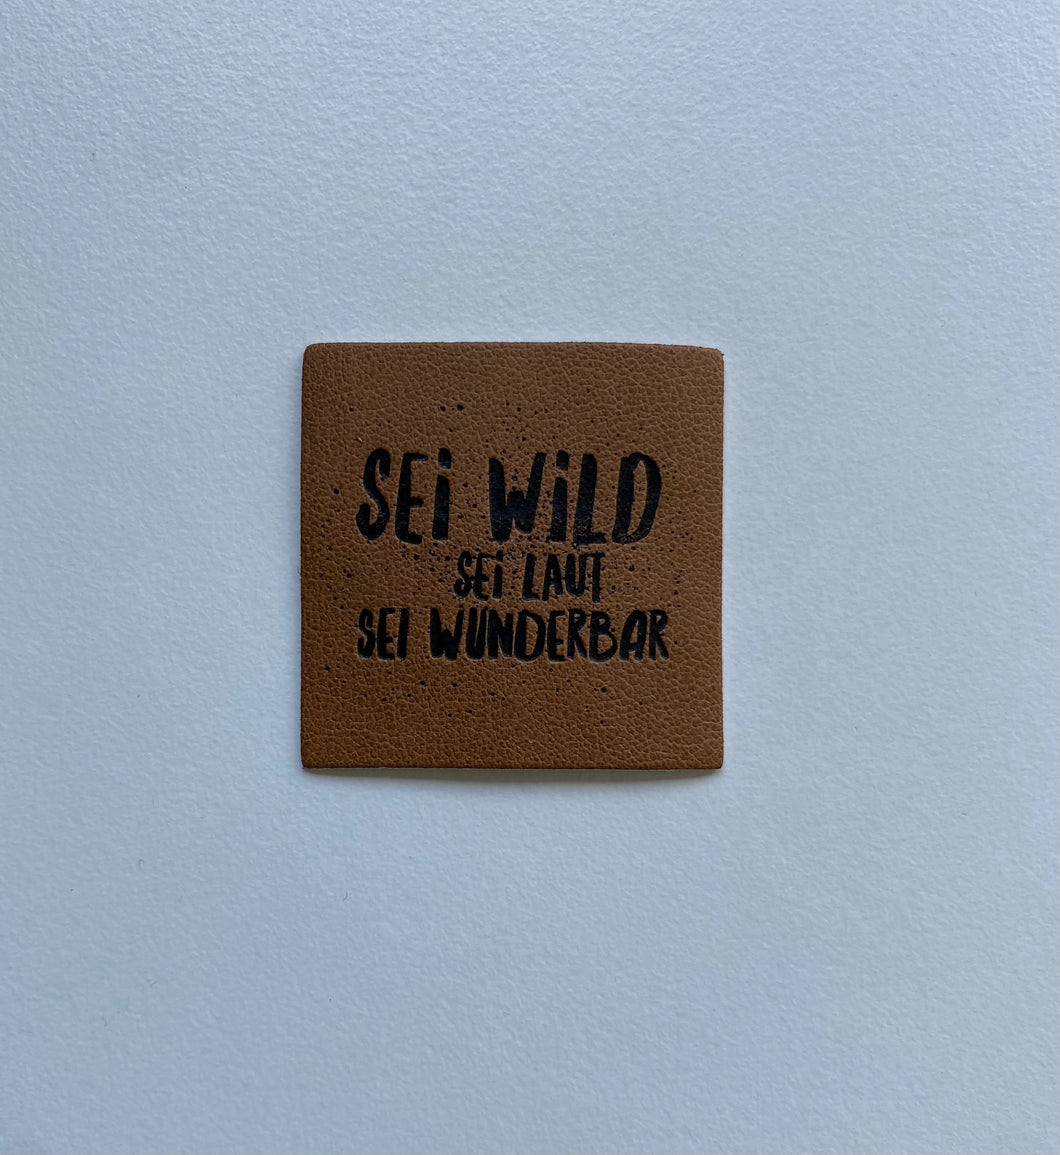 Sei wild, sei laut, sei wunderbar Label